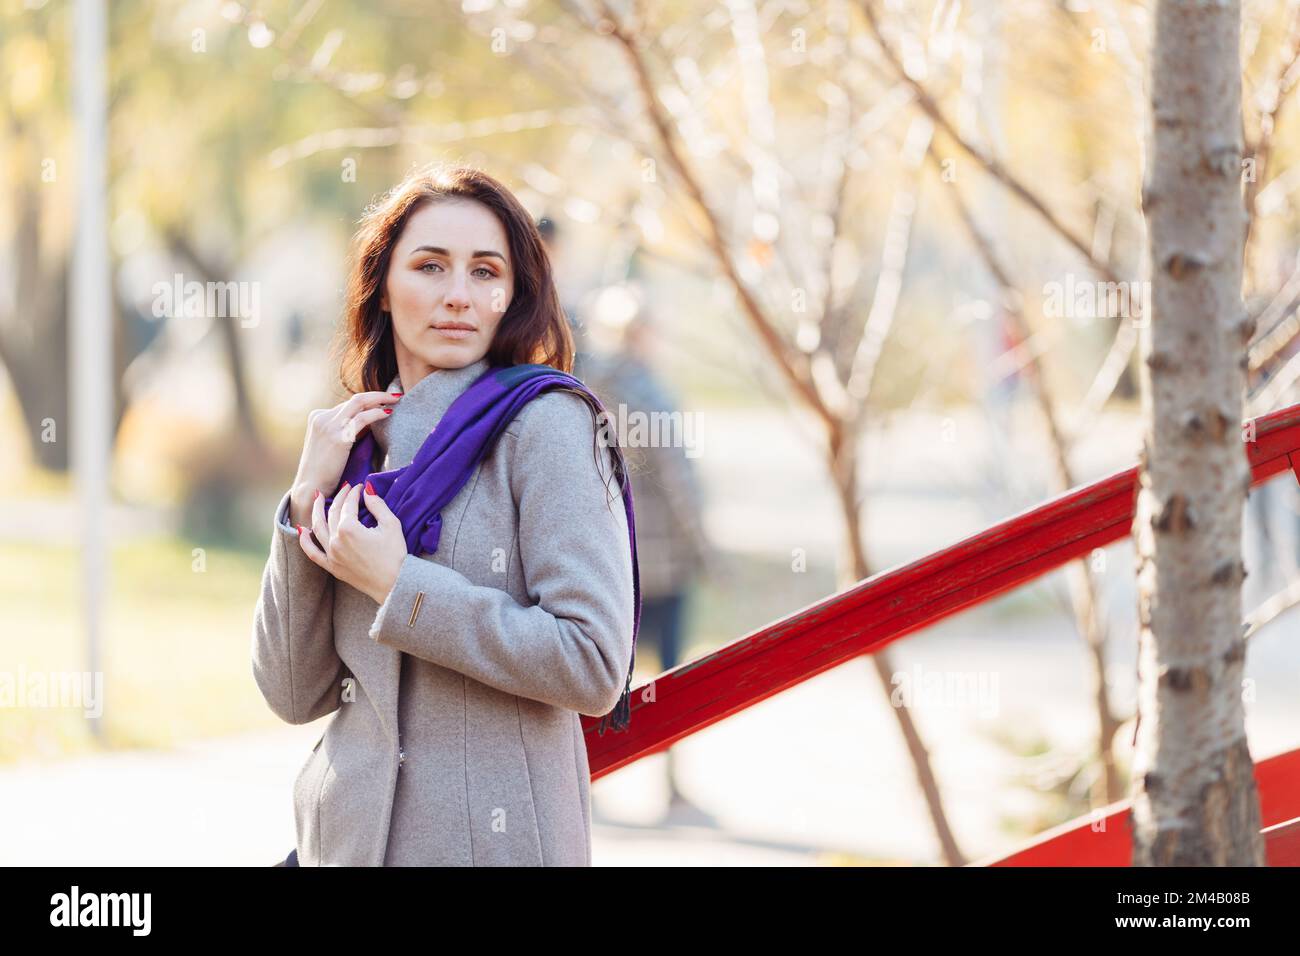 portrait d'une jeune femme avec de longs cheveux respirent de l'air frais un jour ensoleillé d'automne et portant un manteau gris et une écharpe violette. Photo de haute qualité Banque D'Images